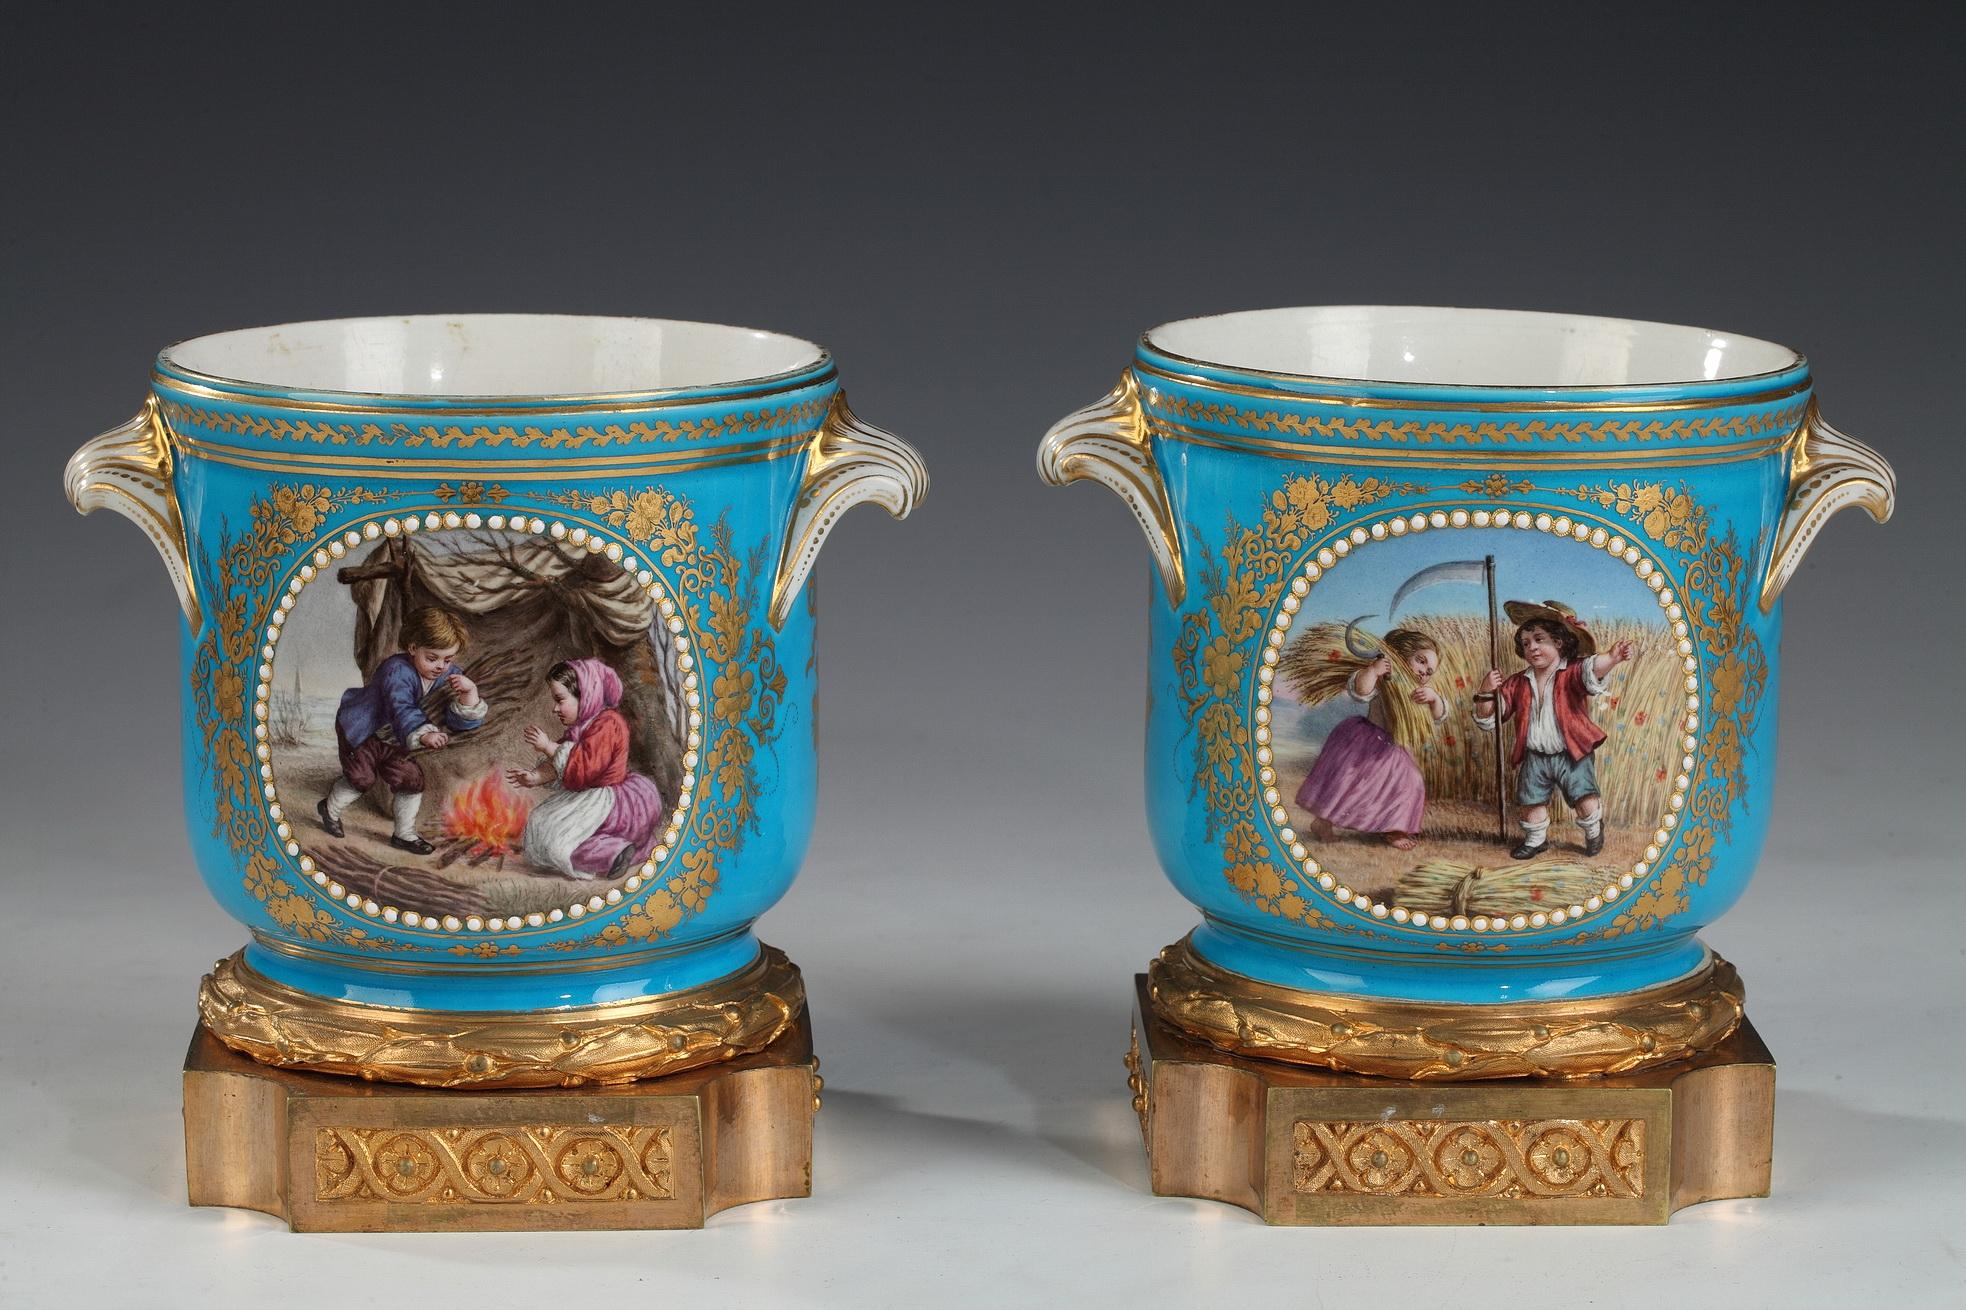 Paire de rafraîchisseurs en porcelaine à médaillons peints et ornements dorés sur fond bleu turquoise, montés sur une base en bronze doré, dans le style de la Manufacture de Sèvres. À l'avers figurent deux scènes d'enfance peintes représentant l'été